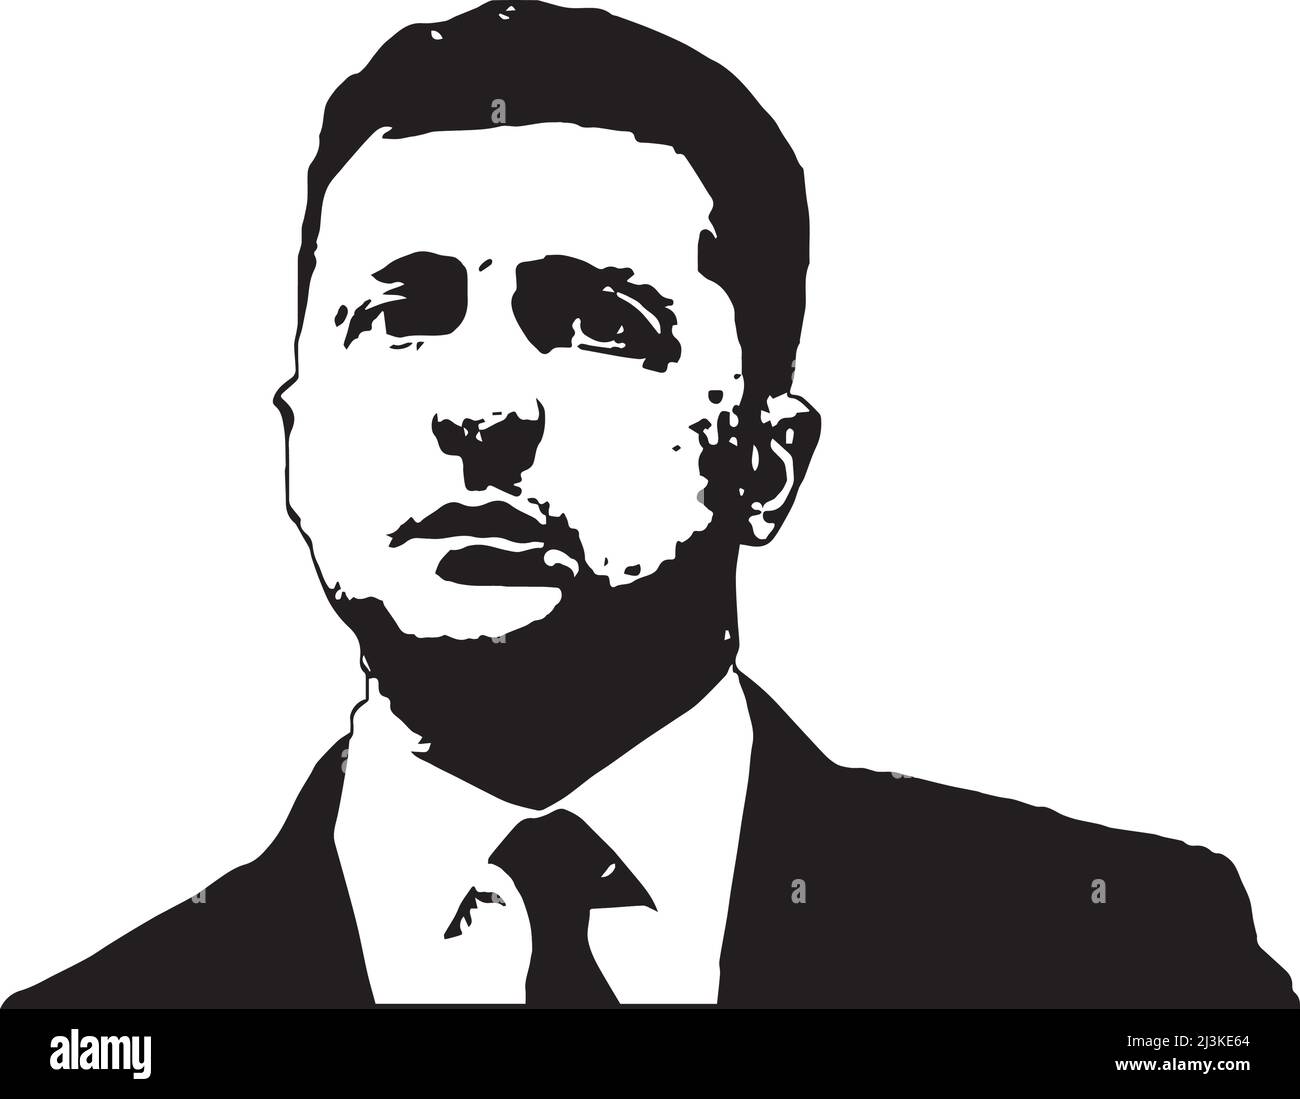 Le président ukrainien volodymyr zelensky silhouette noire et blanche Illustration de Vecteur